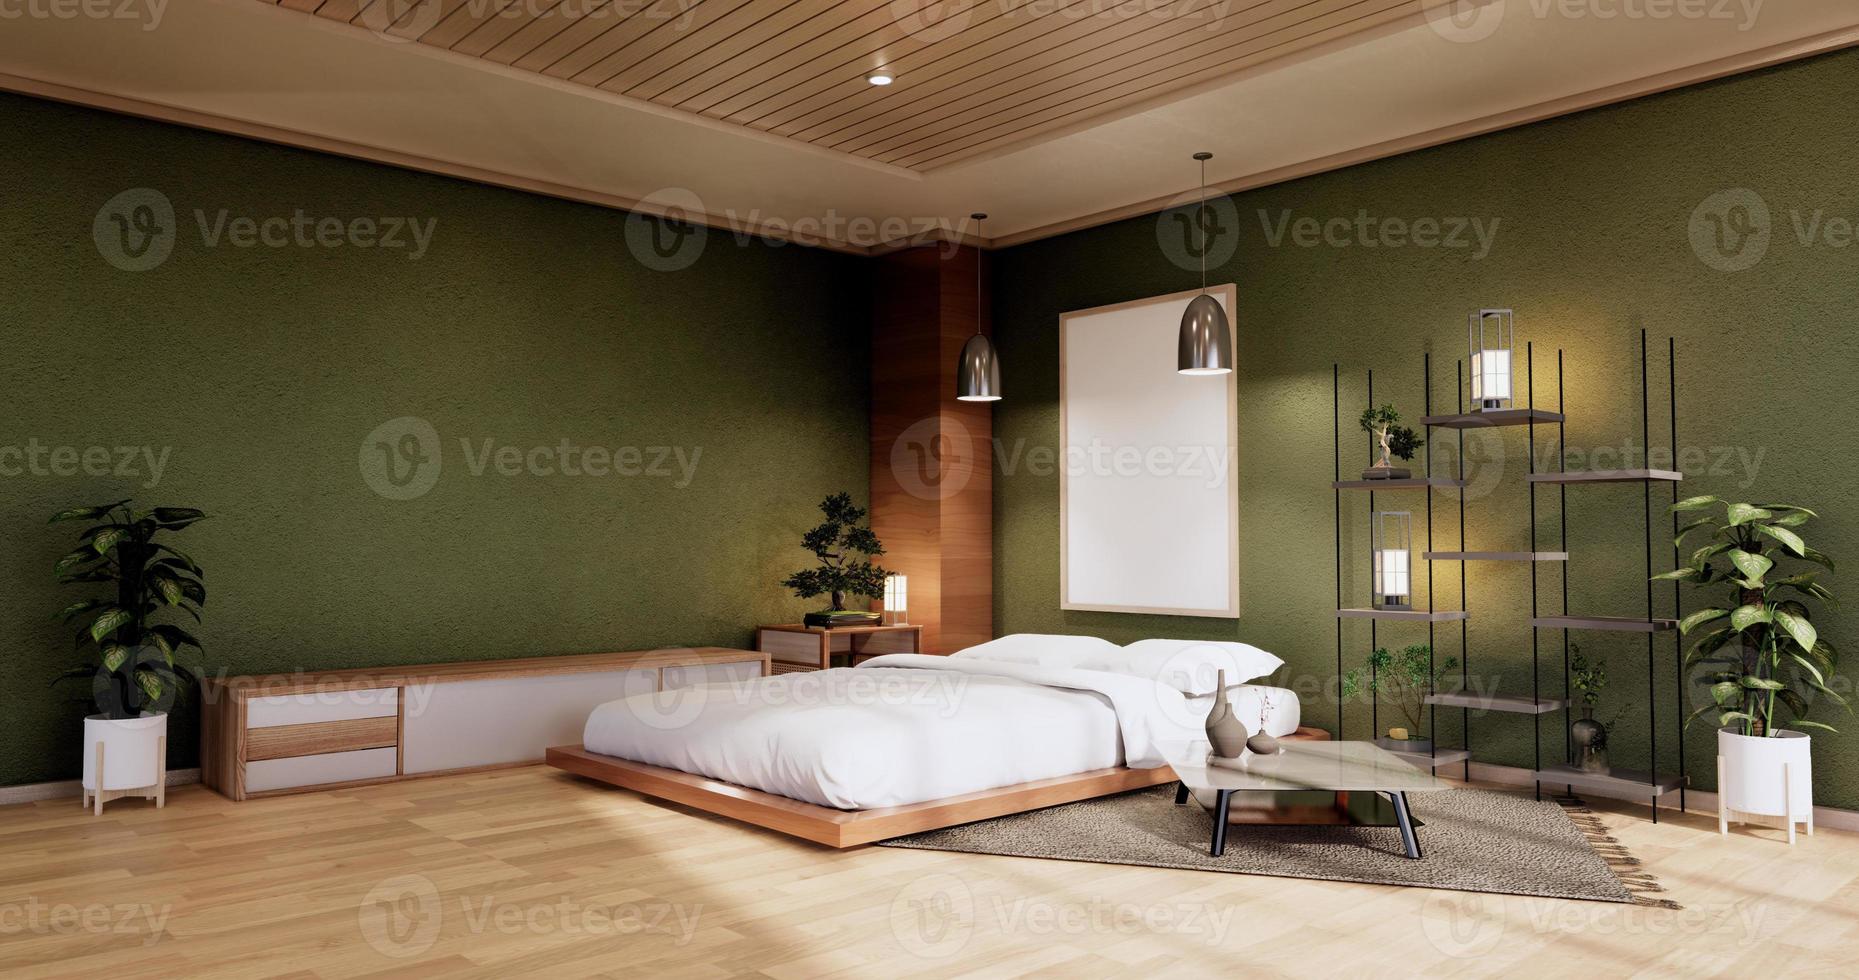 maqueta interior con planta de cama zen y decoración en dormitorio verde japonés. Representación 3D. foto